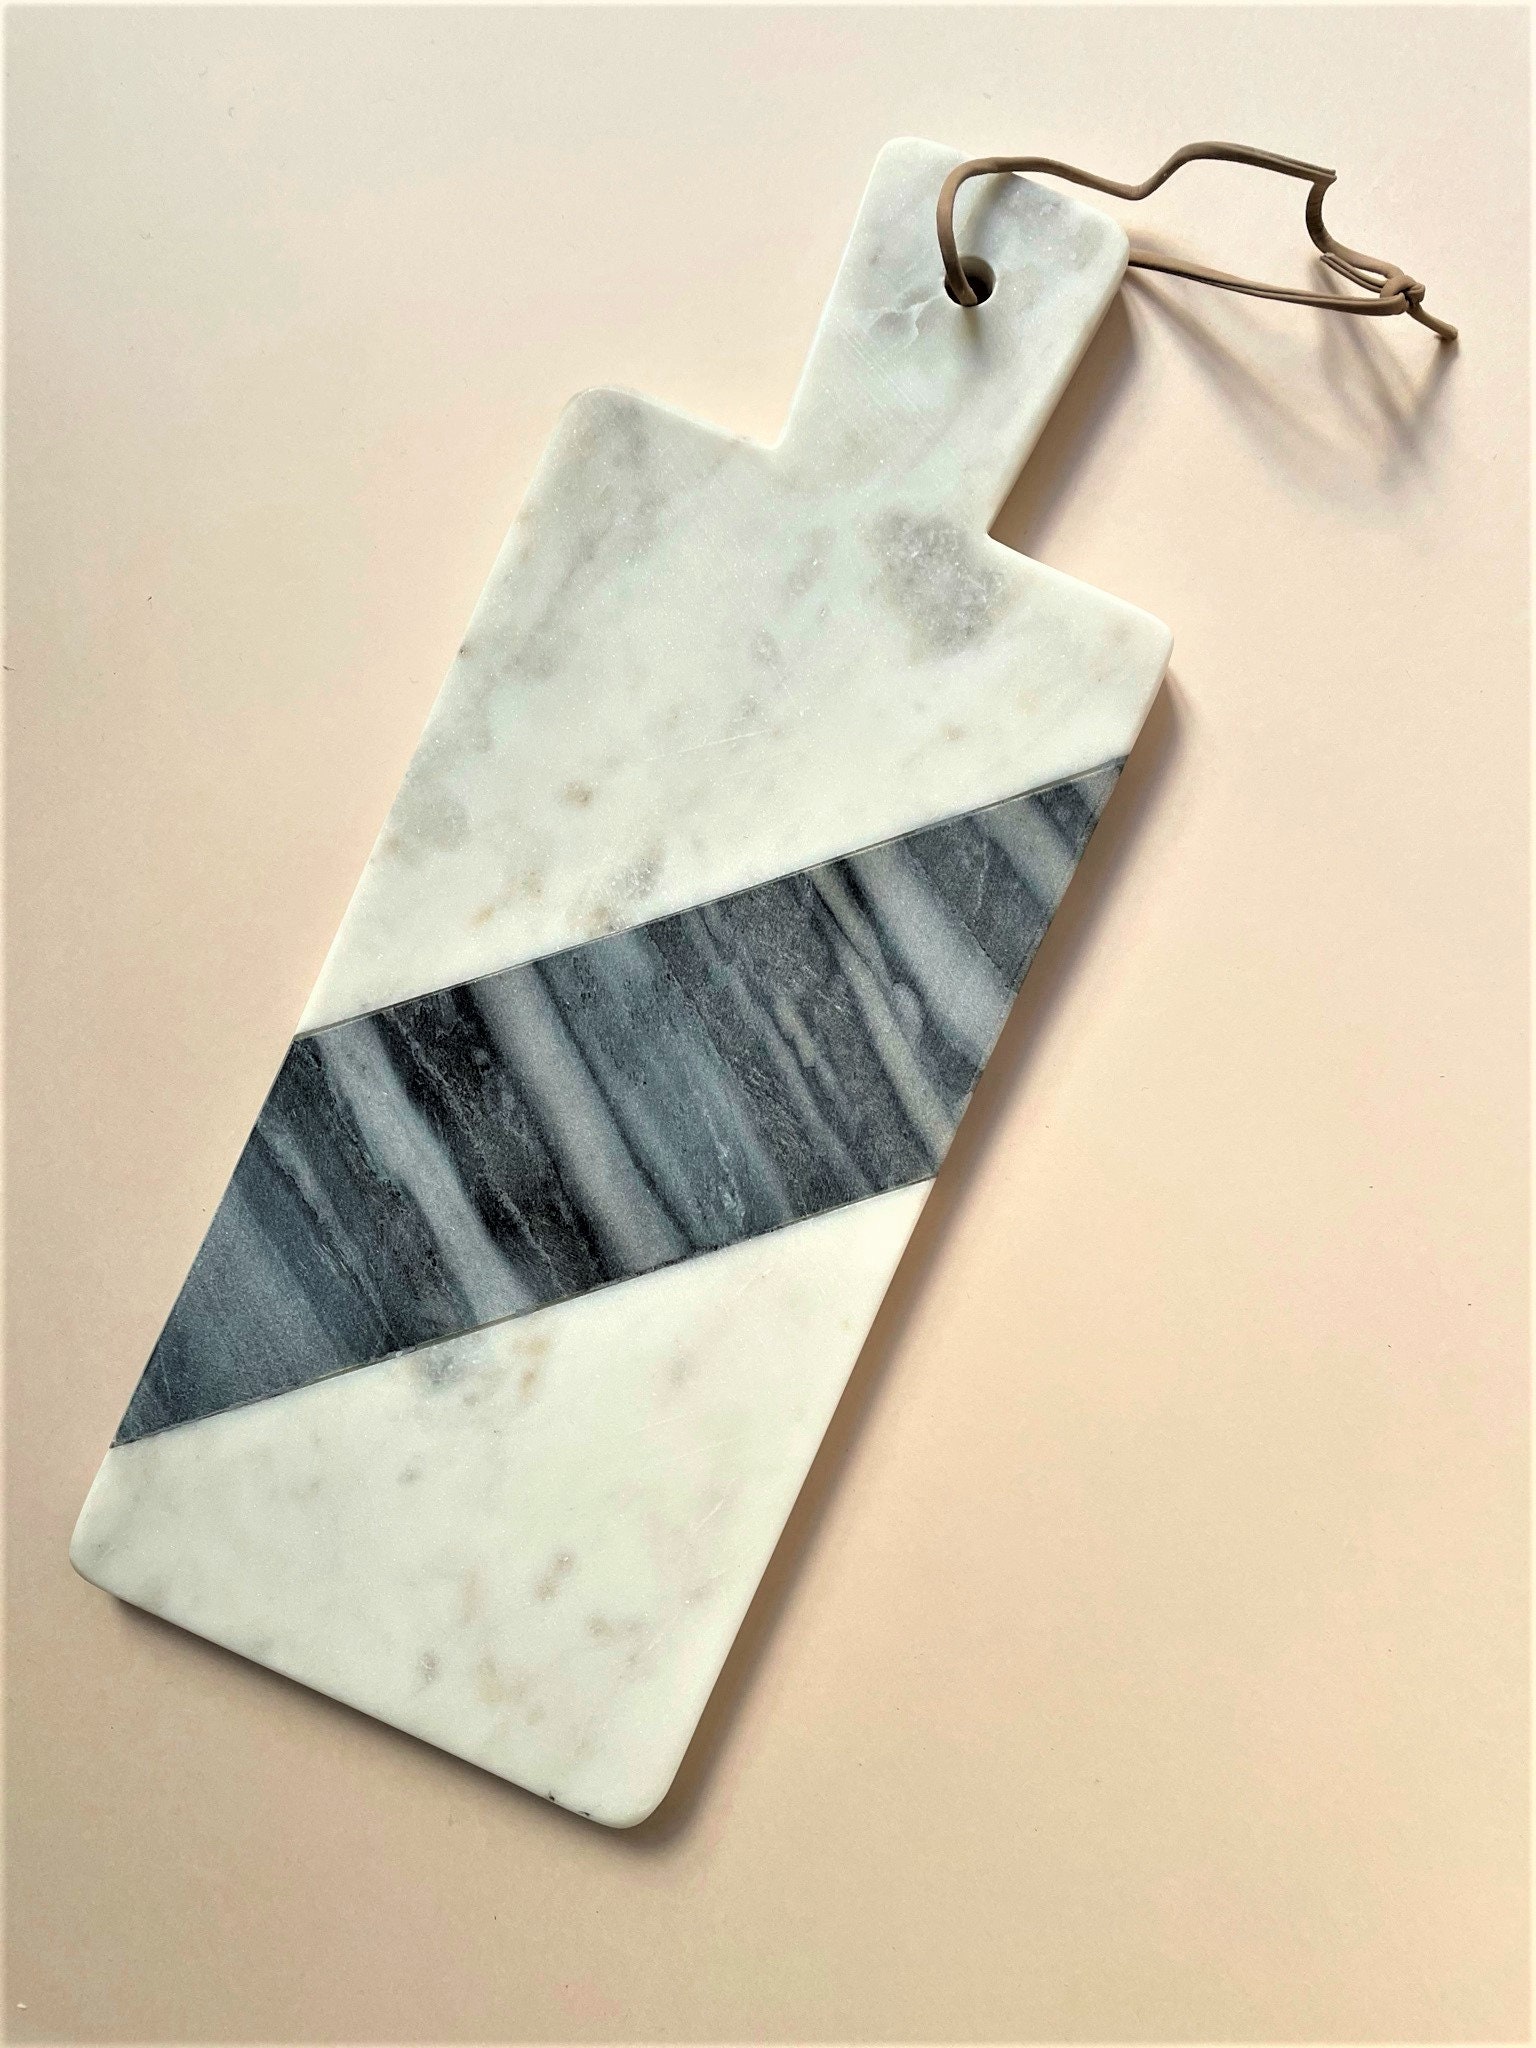 planche à découper en marbre blanc et gris avec poignée cordon cuir, planche épaisse, bois recette